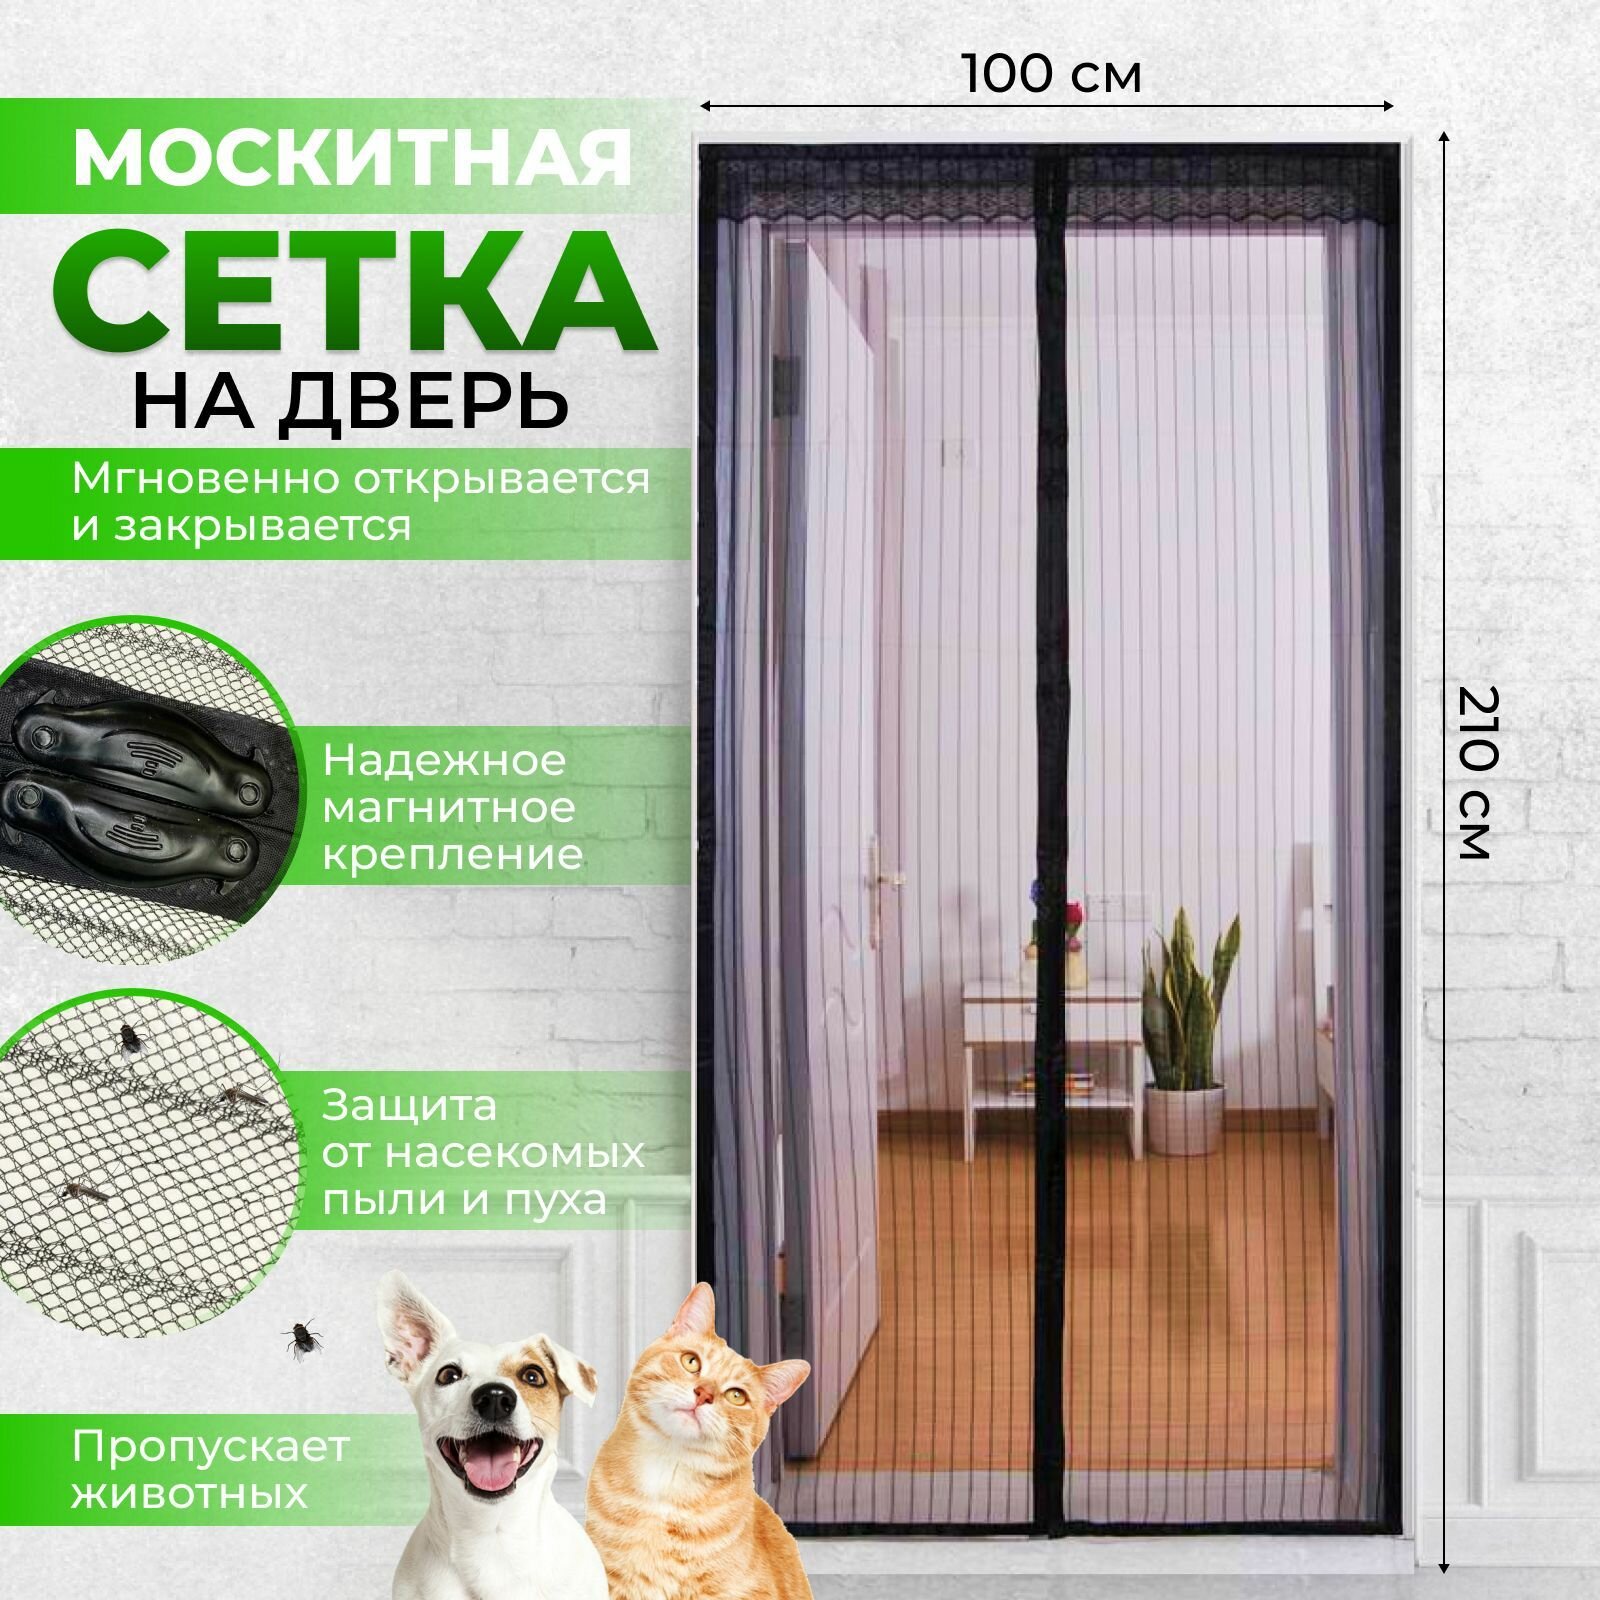 Москитная сетка на дверь на магнитах, антимоскитная дверная сетка от комаров с крепежной лентой, 100х210 см, черная